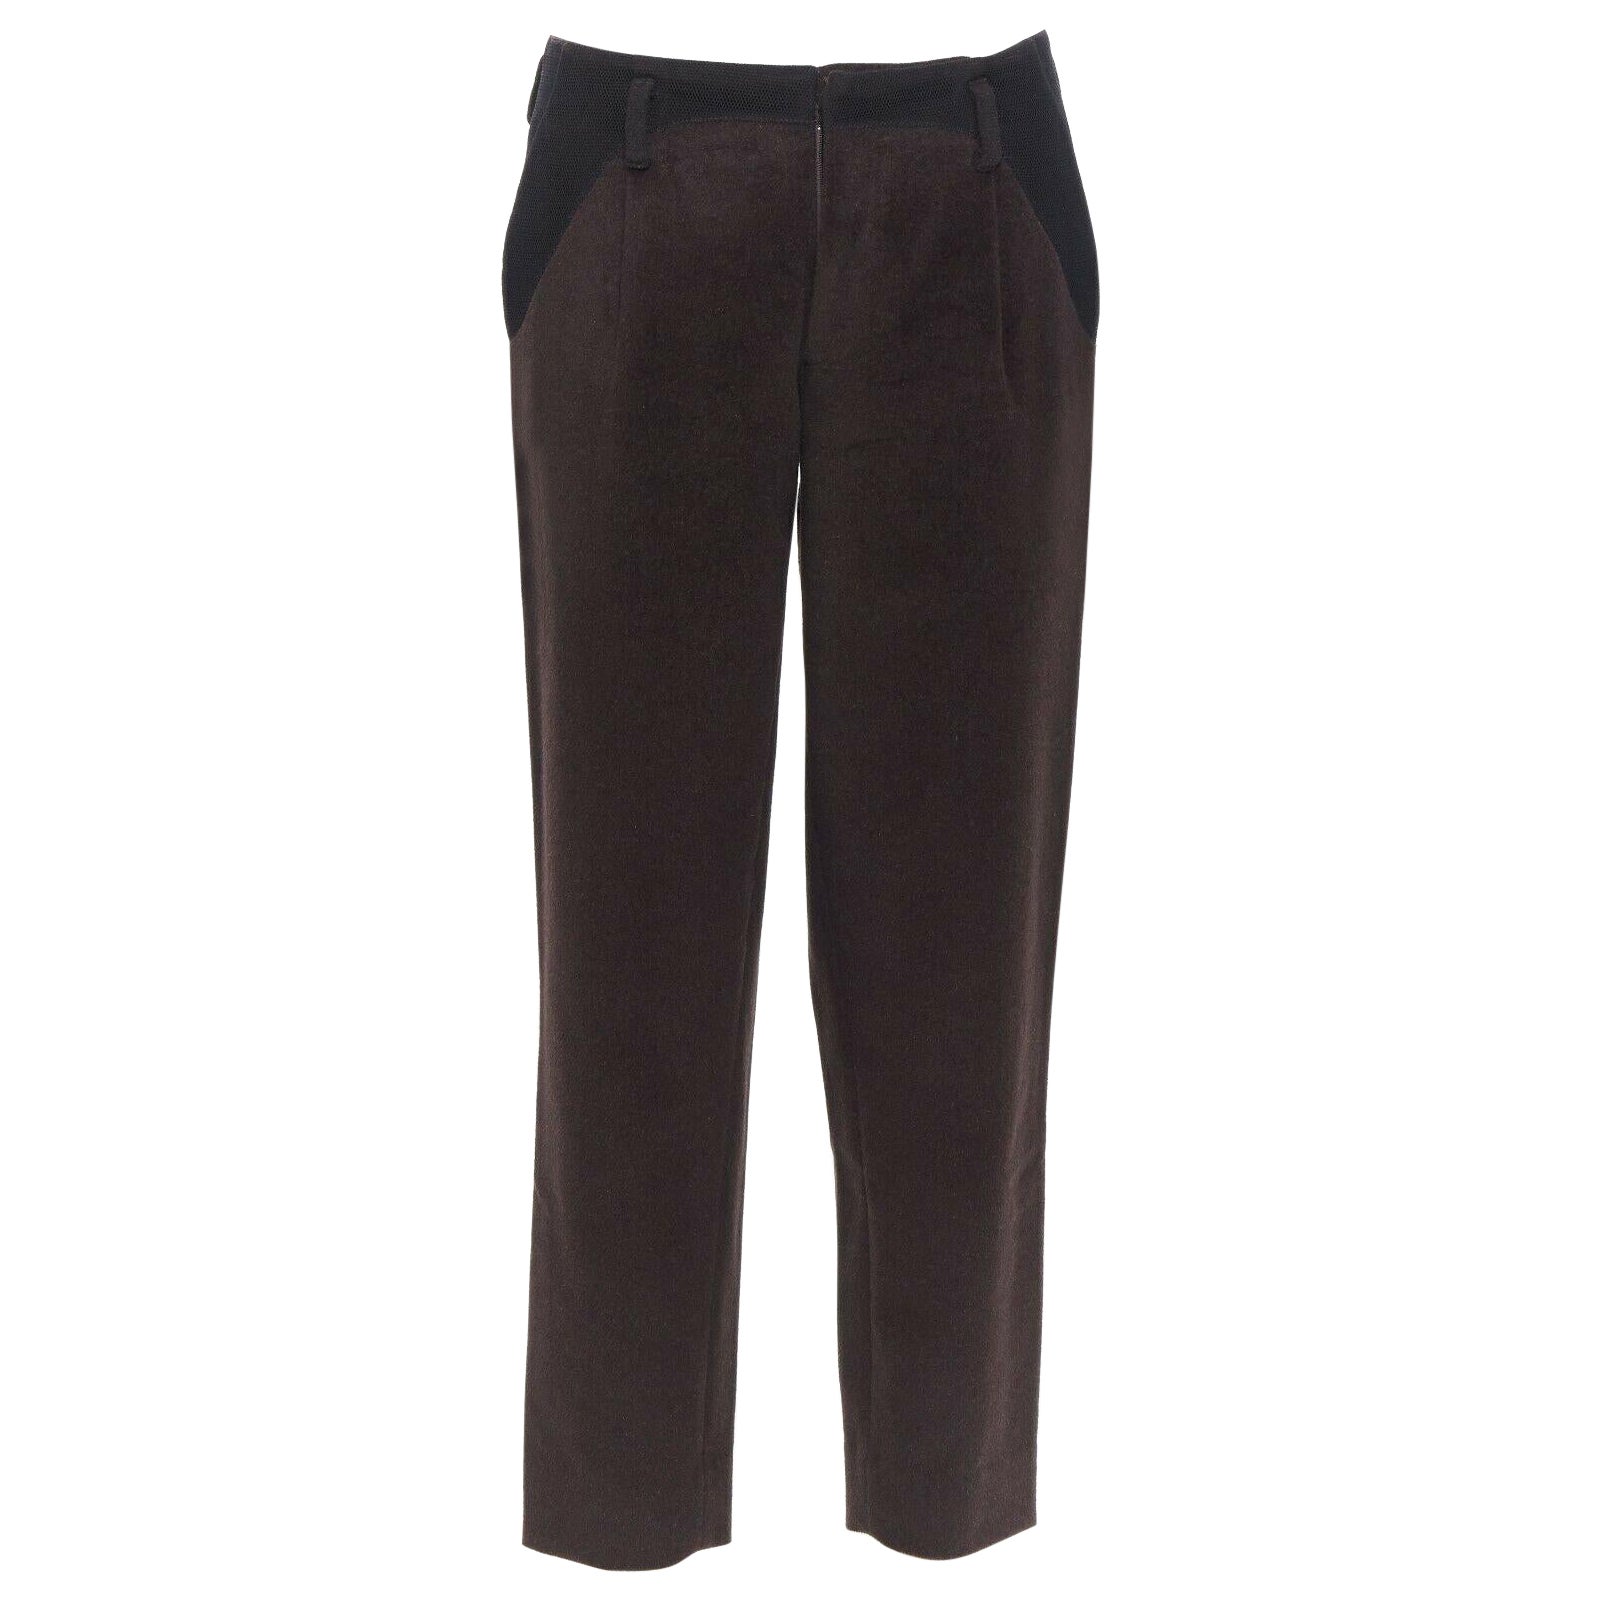 KOLOR men's dark brown mohair black mesh panels straight legged trousers pants